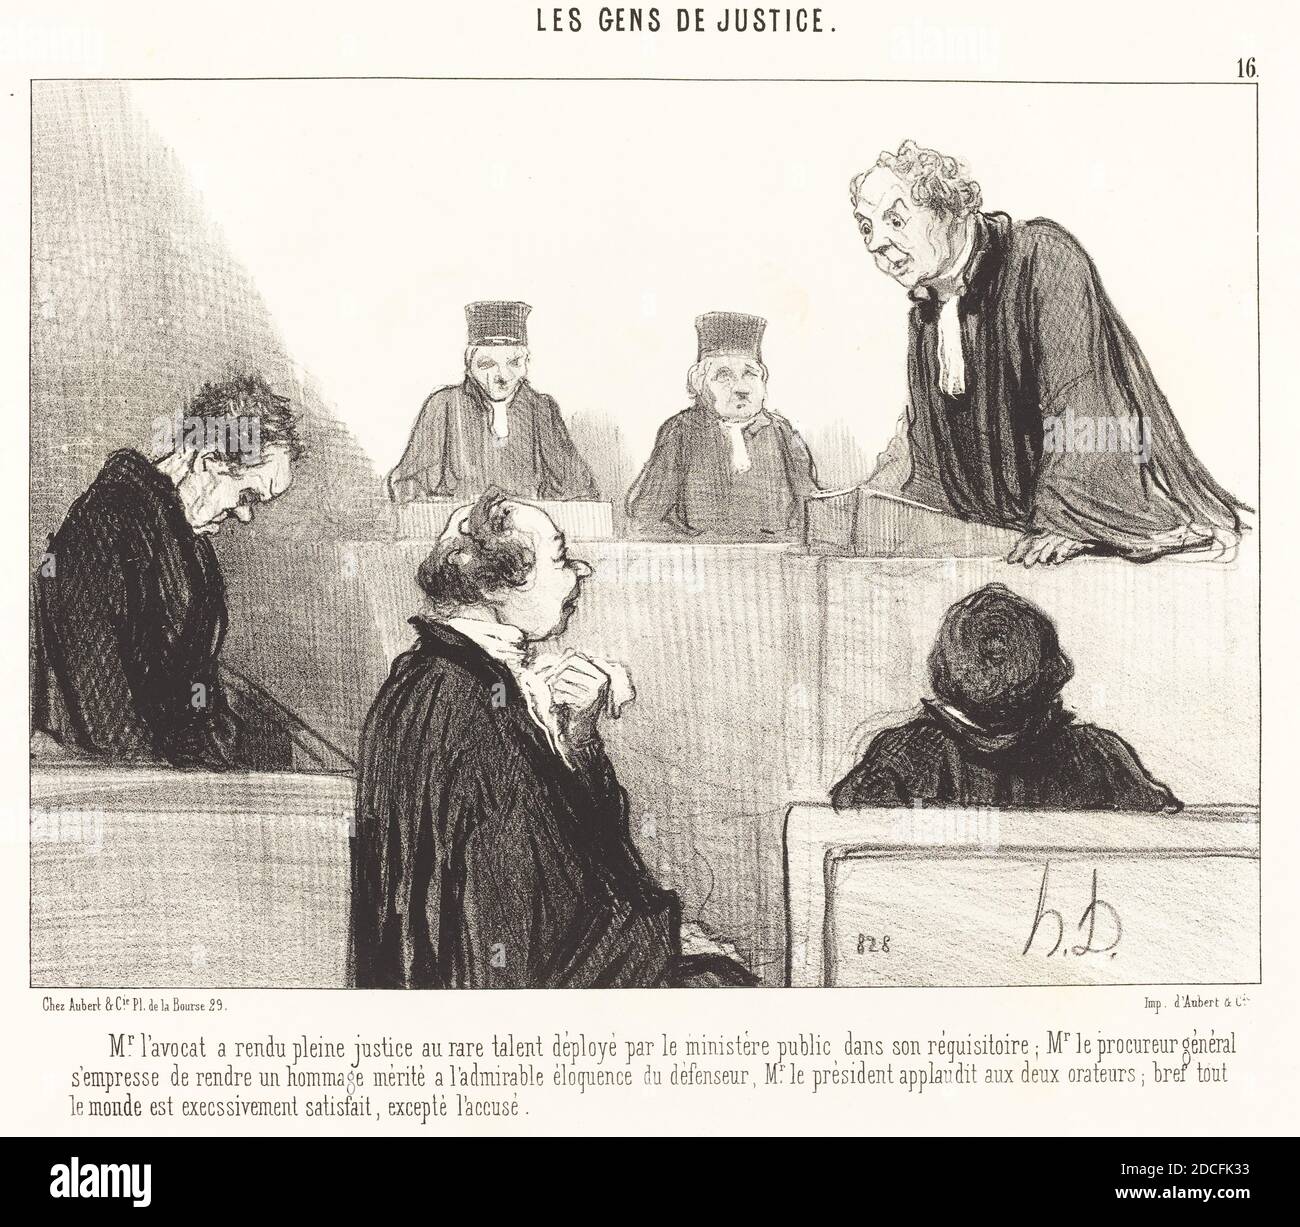 Honoré Daumier, (artista), francese, 1808 - 1879, l'avocat a rendu pleine justice..., Les Gens de justice: pl.16, (serie), 1846, litografia Foto Stock